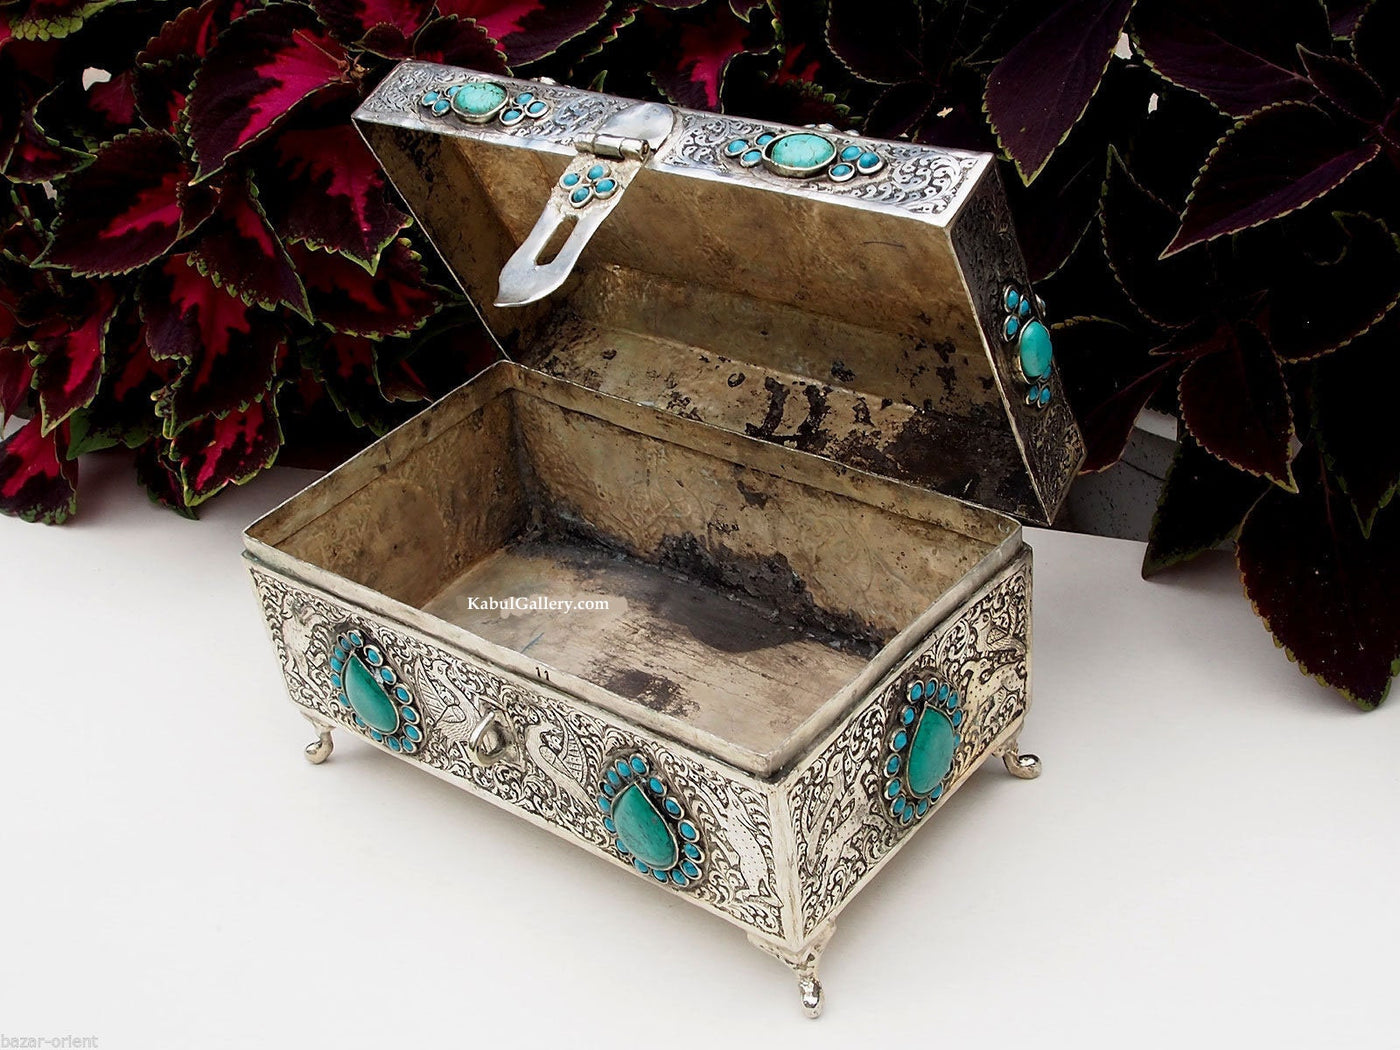 Extravagant orientalische islamische Neusilber büchse Schmuckdose schatulle Truhe mit Türkis und Karneol verziert aus Afghanistan  Orientsbazar   